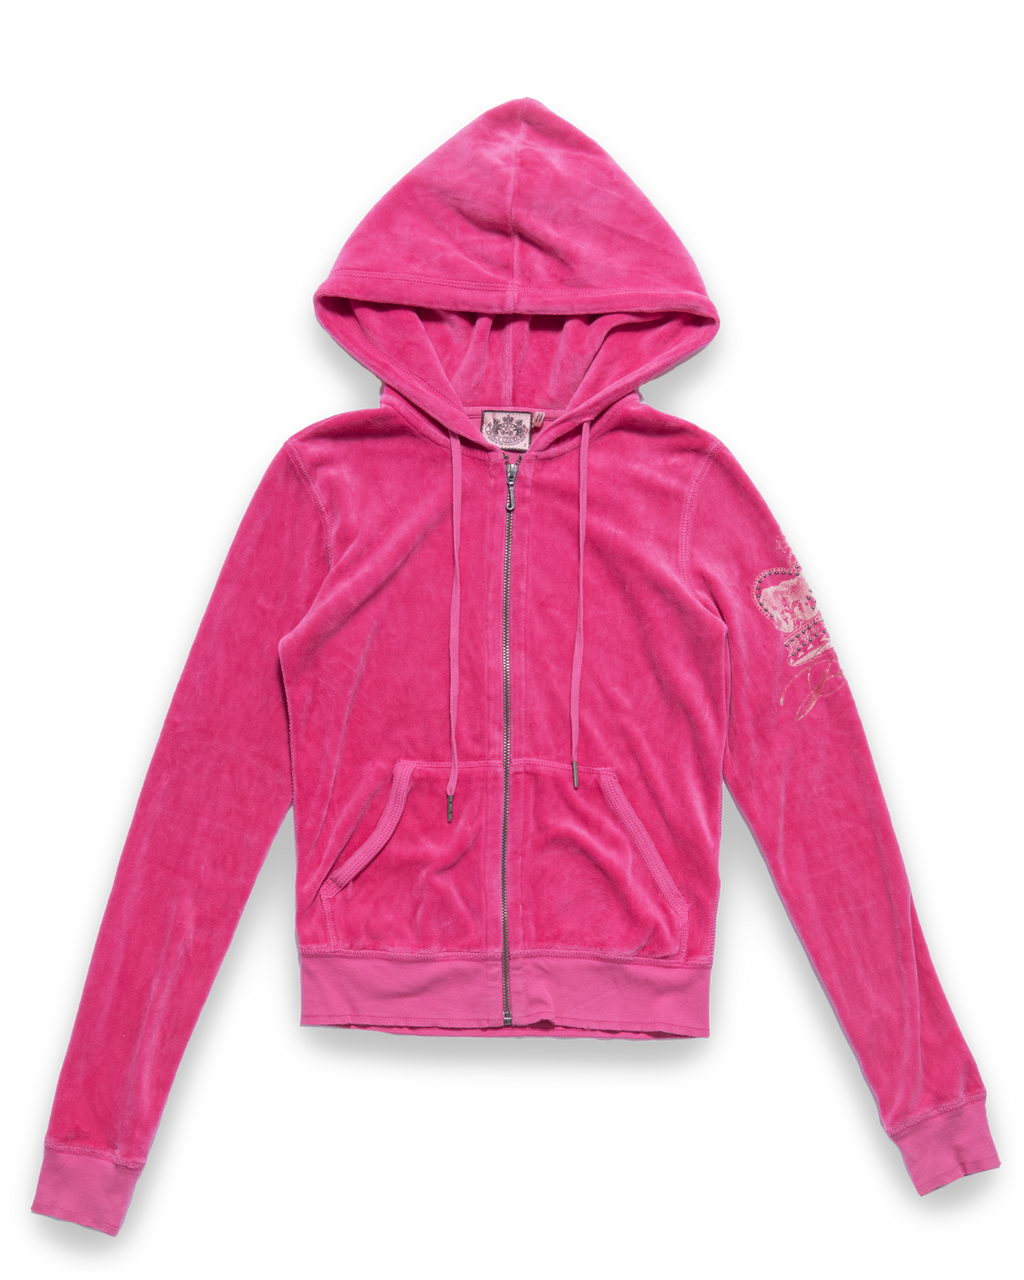 Juicy Couture Zip Jacket hot pink